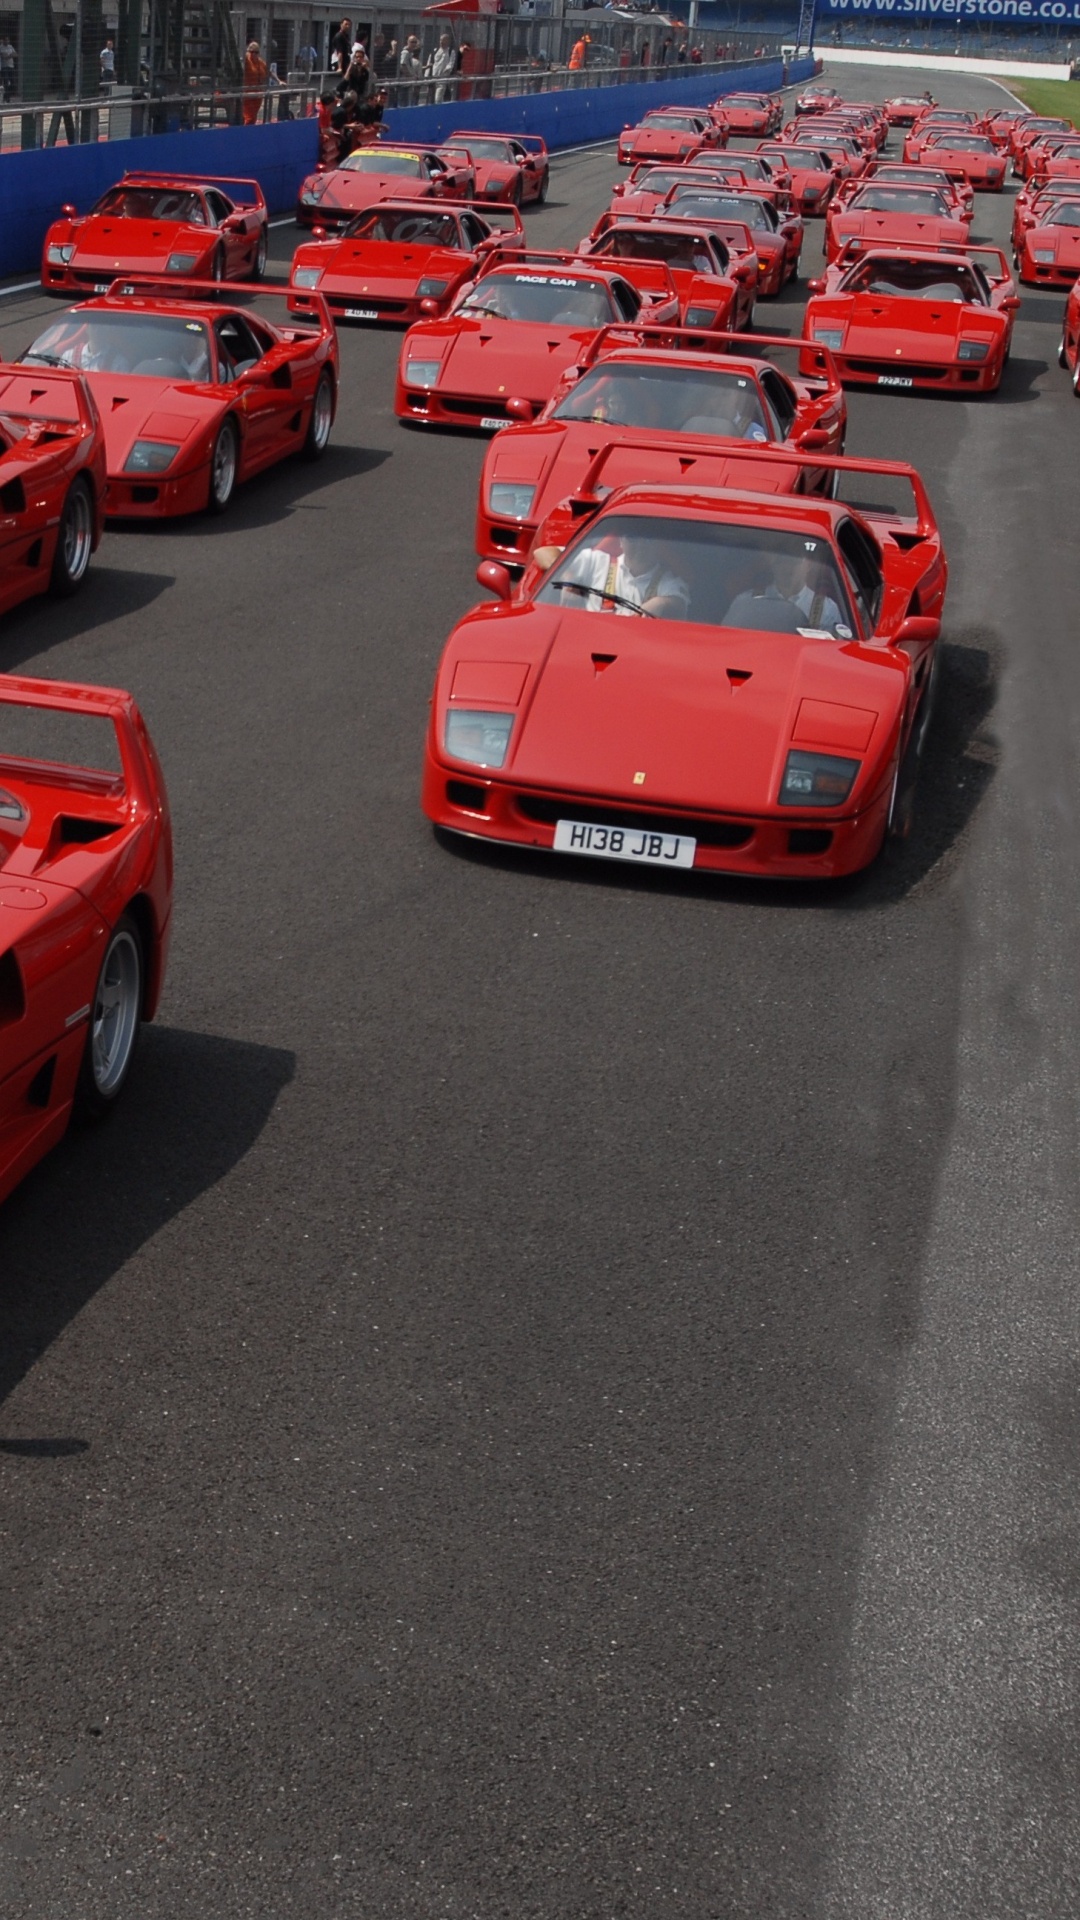 法拉利f40, Laferrari, Ferrari, 超级跑车, 性能车 壁纸 1080x1920 允许